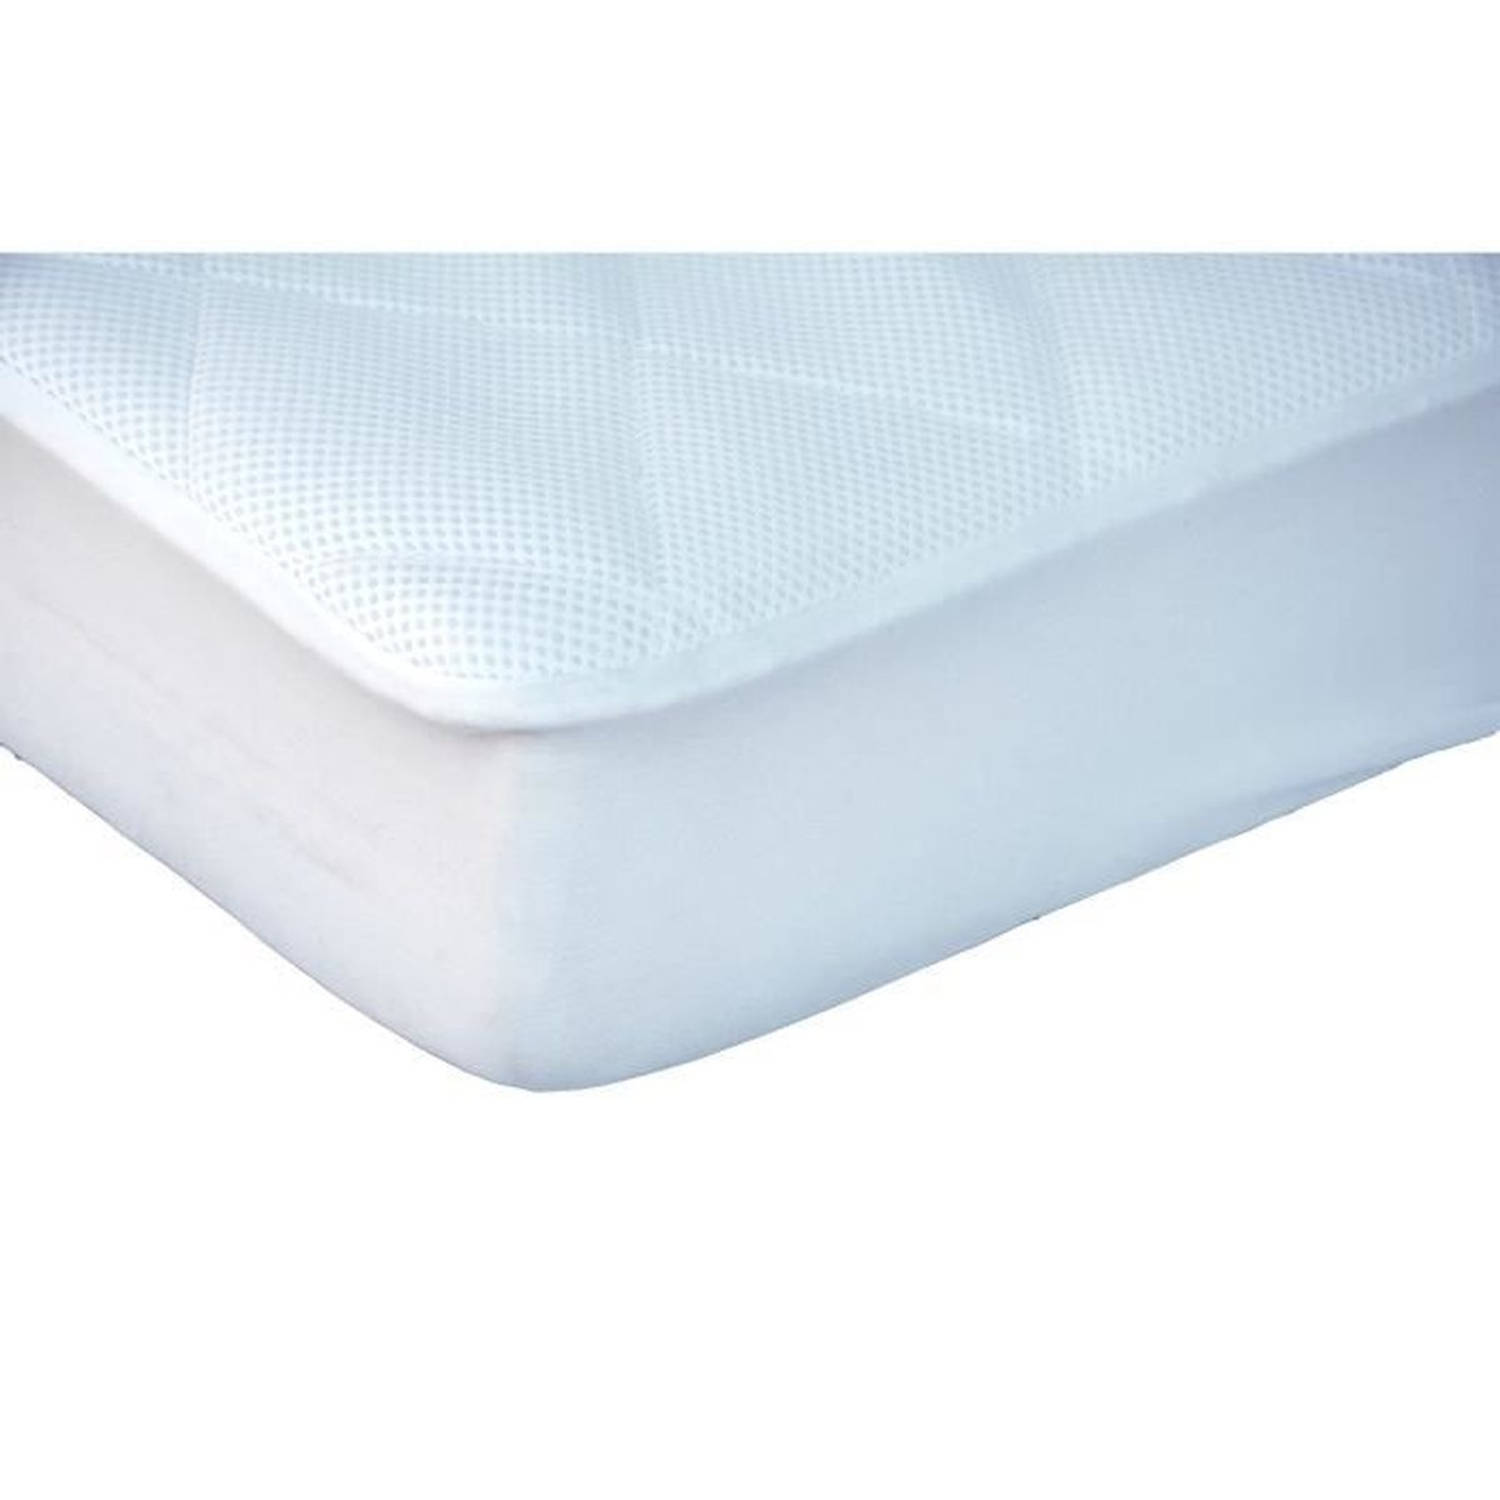 DouxNid Nova Alese matrasbeschermer voor bed 70x140 cm wit 3D mesh